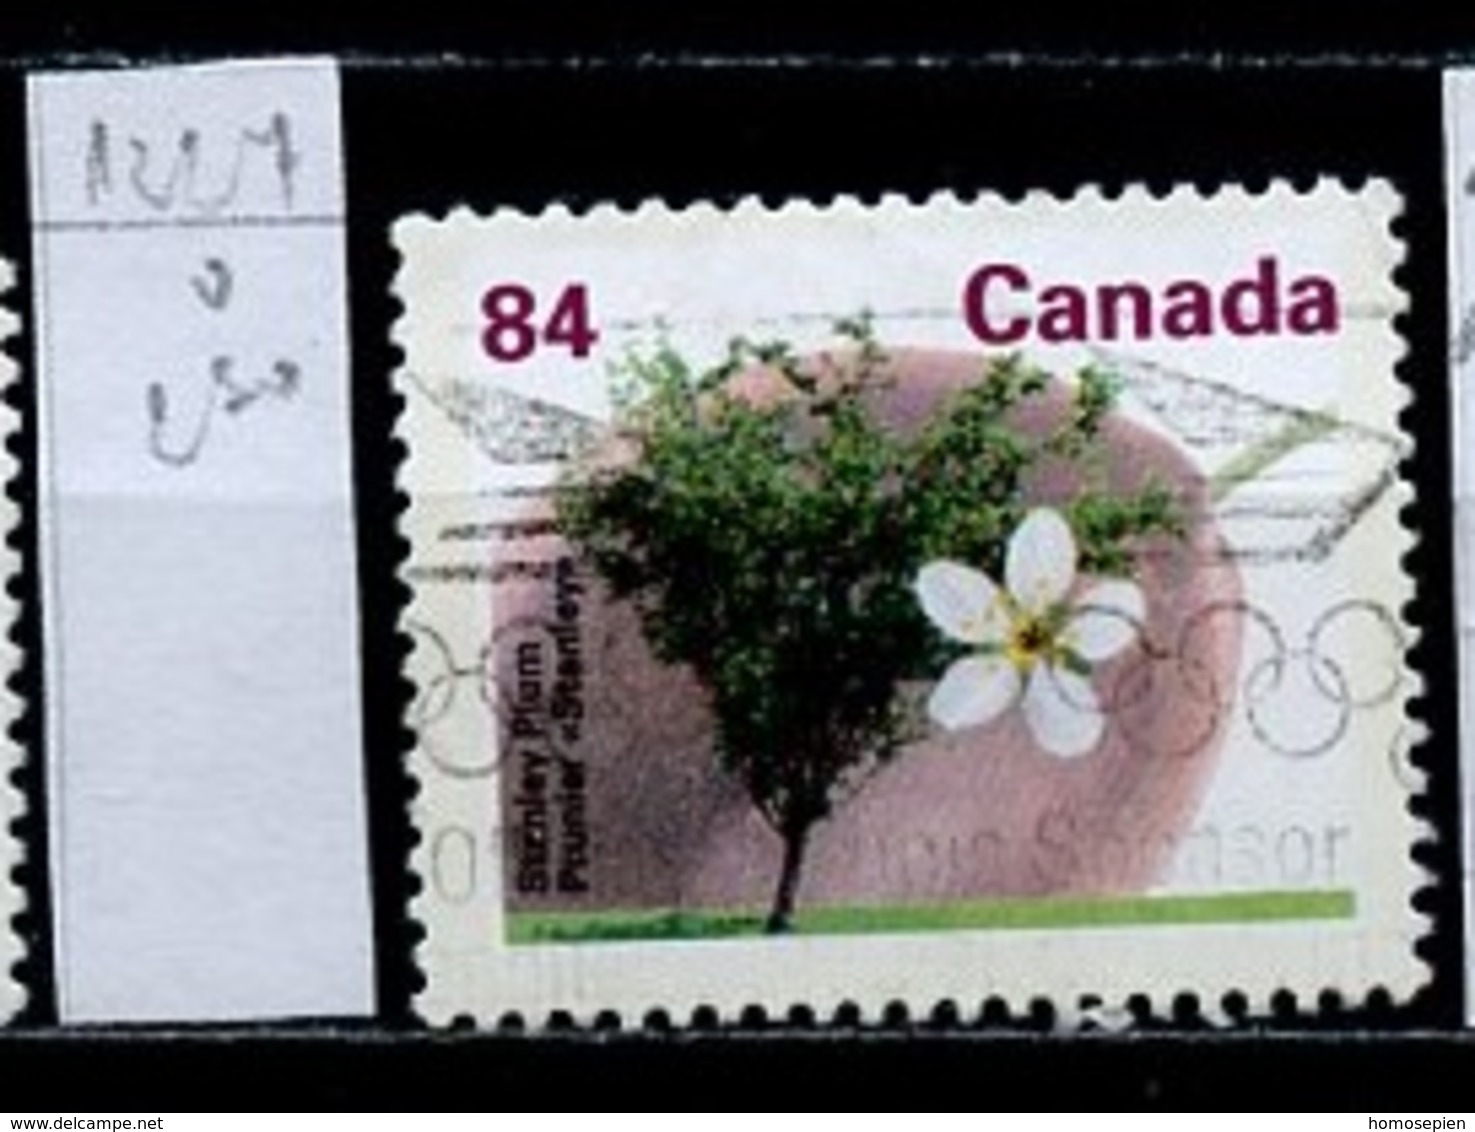 Canada - Kanada 1991 Y&T N°1227 - Michel N°1272 (o) - 84c Prunier - Oblitérés